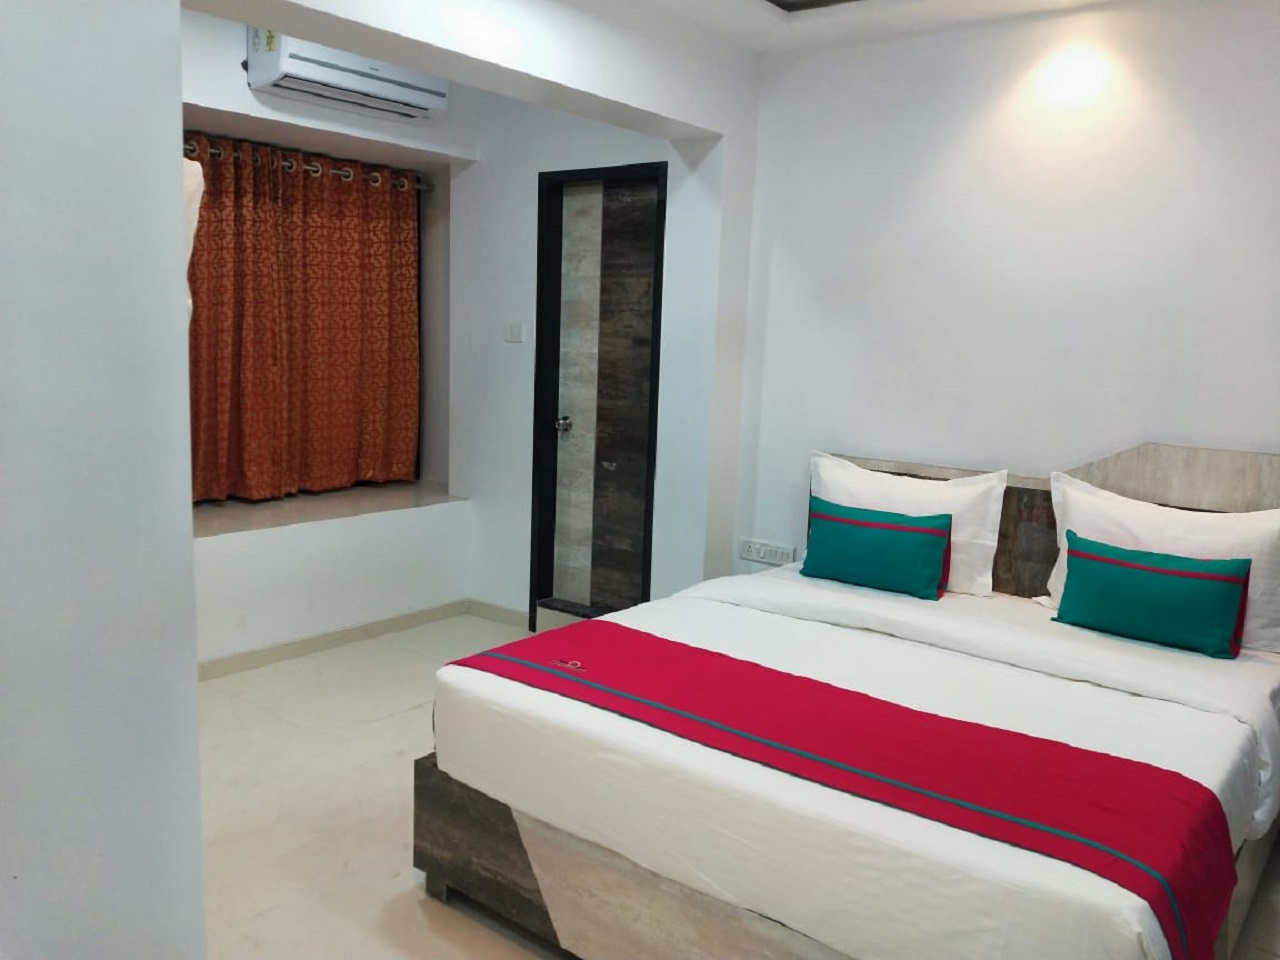 Deluxe Room at Hotel Park Inn Andheri west Mumbai